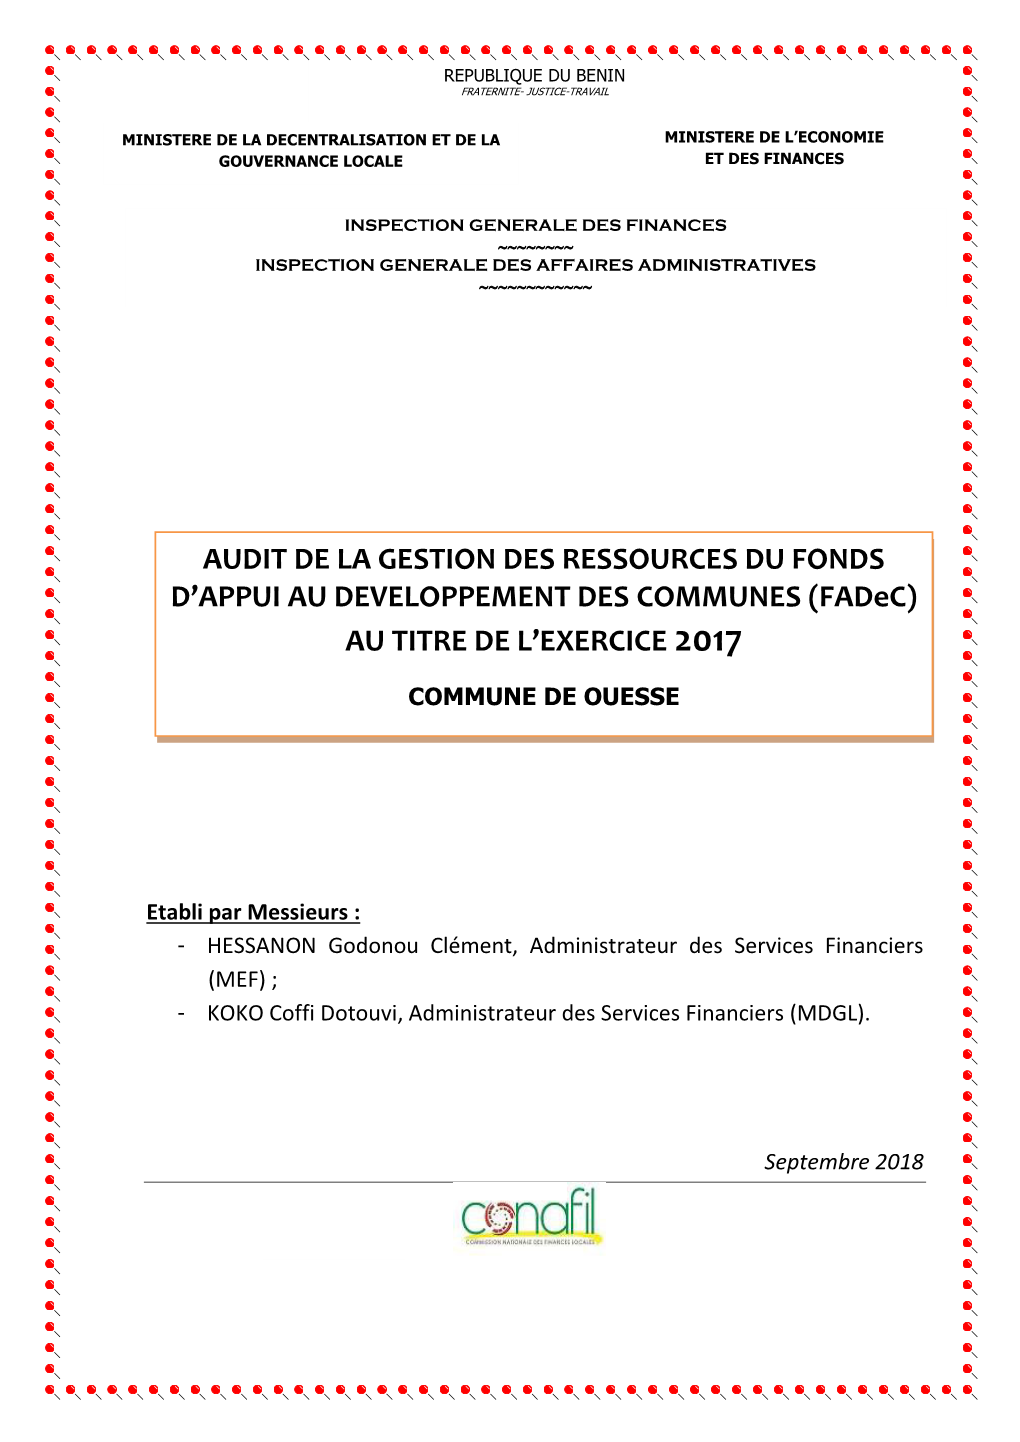 Ouessè Audit Fadec 2017